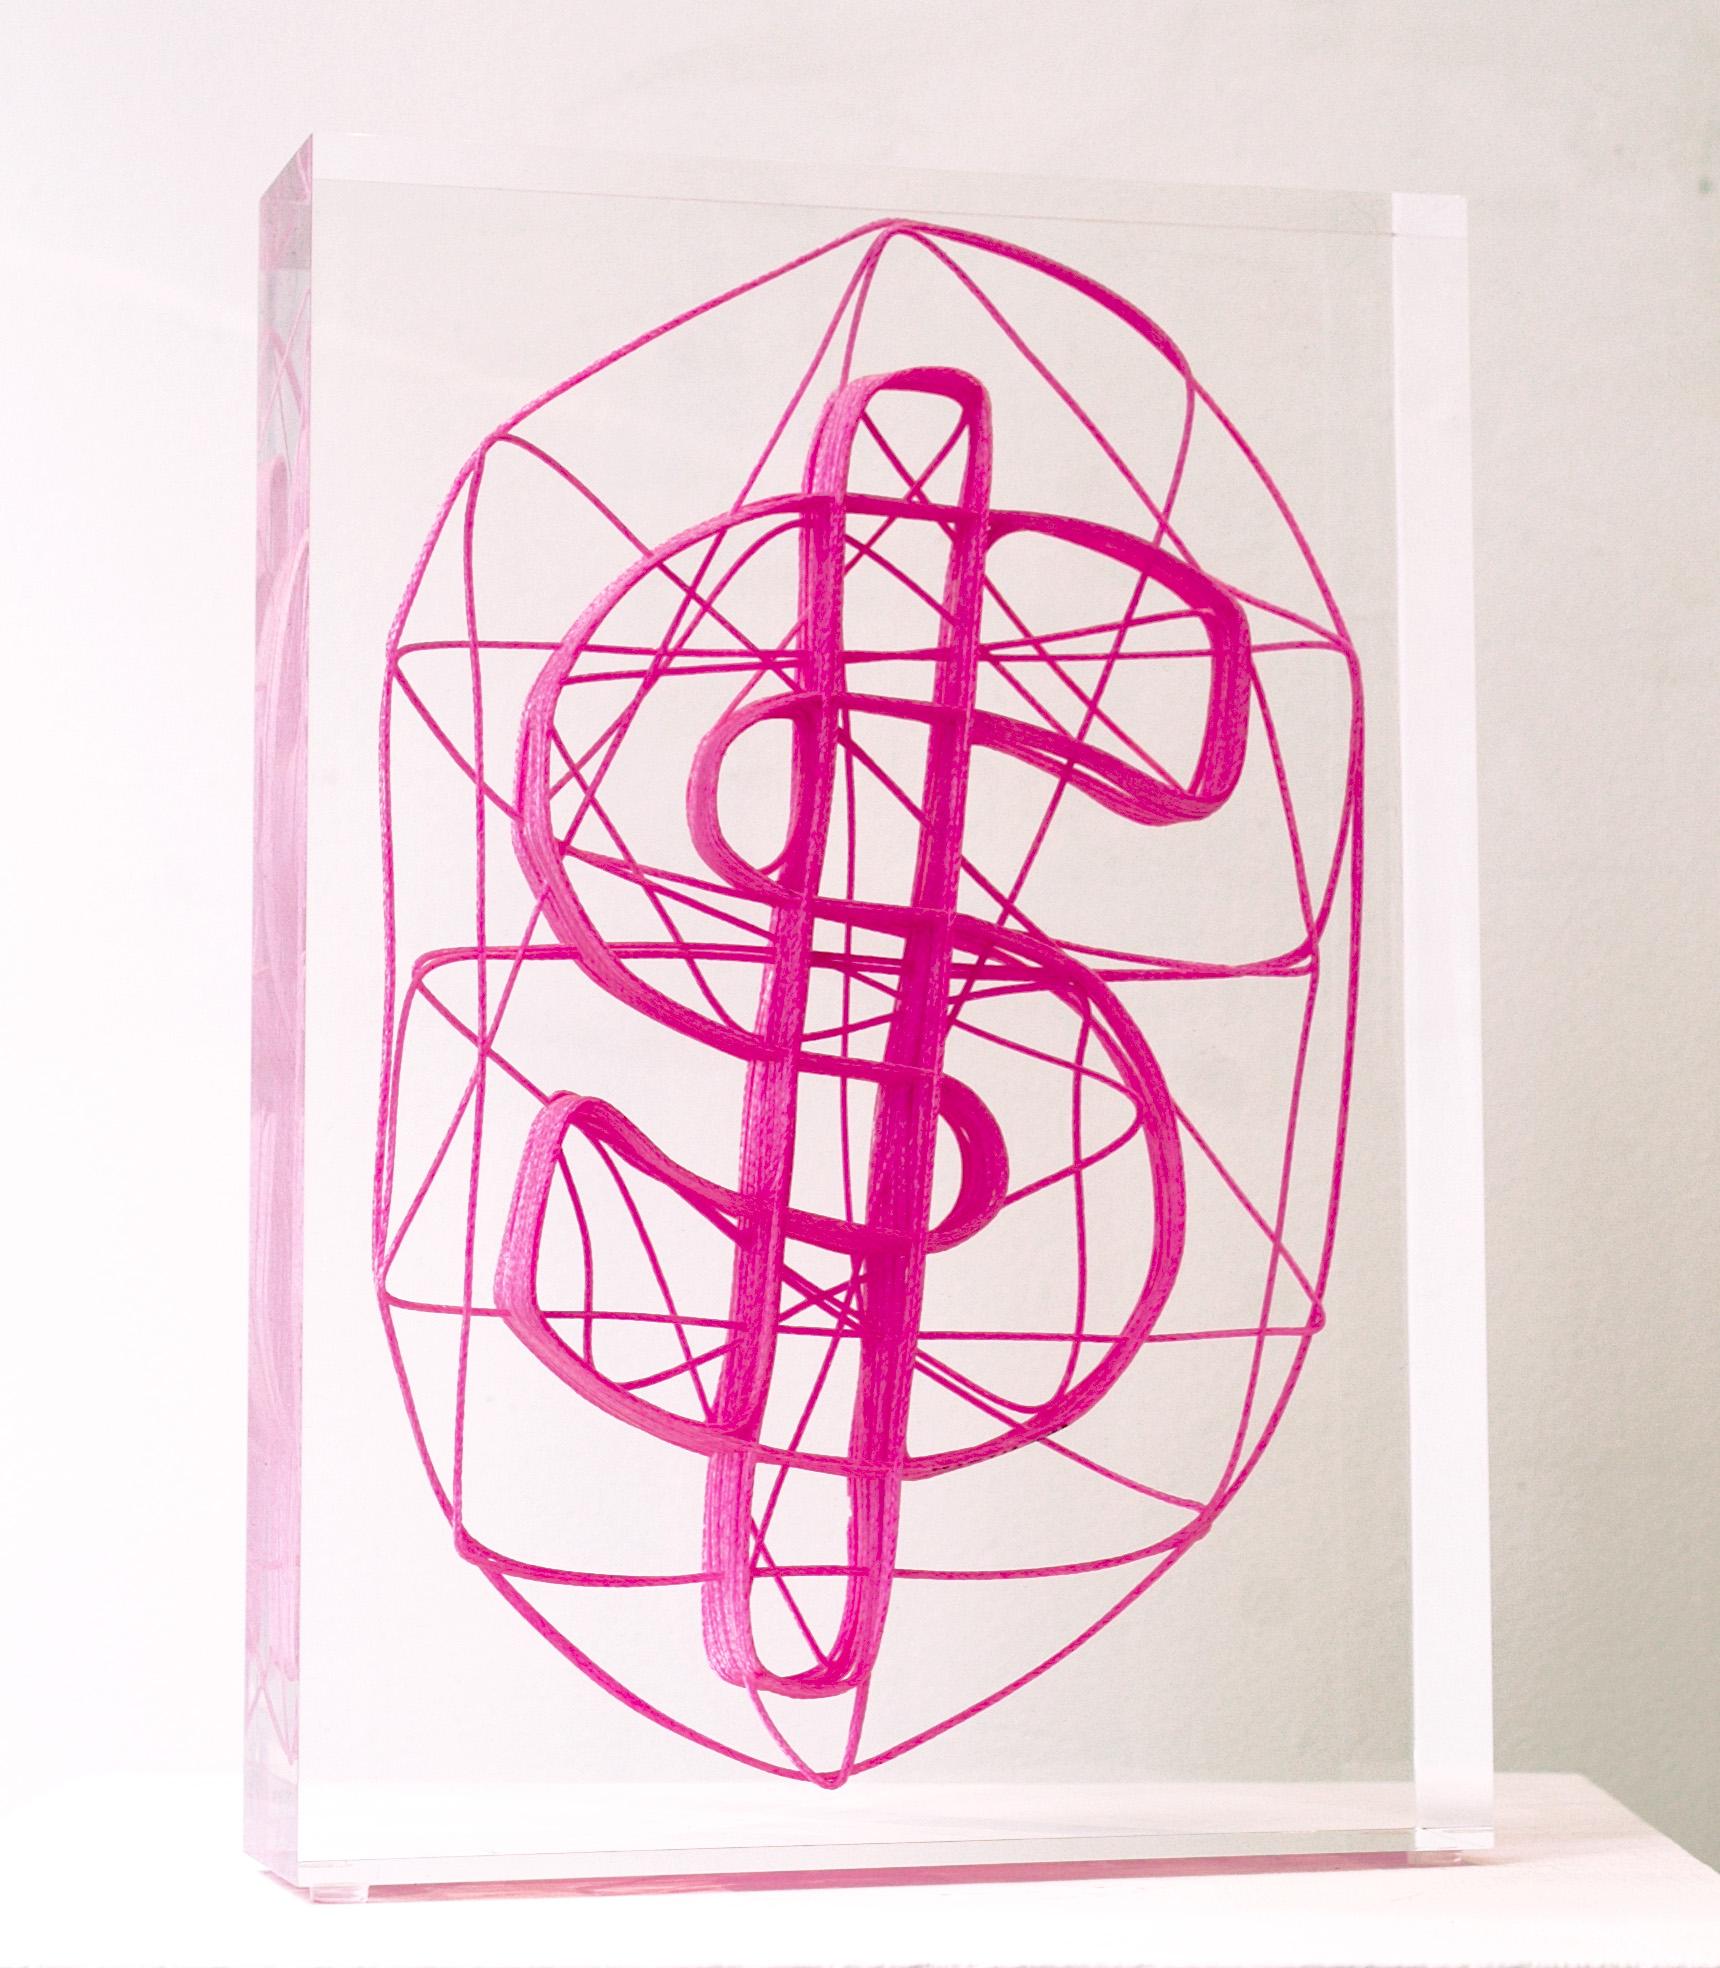 Dollar en corde rose - Sculpture de Helder Batista